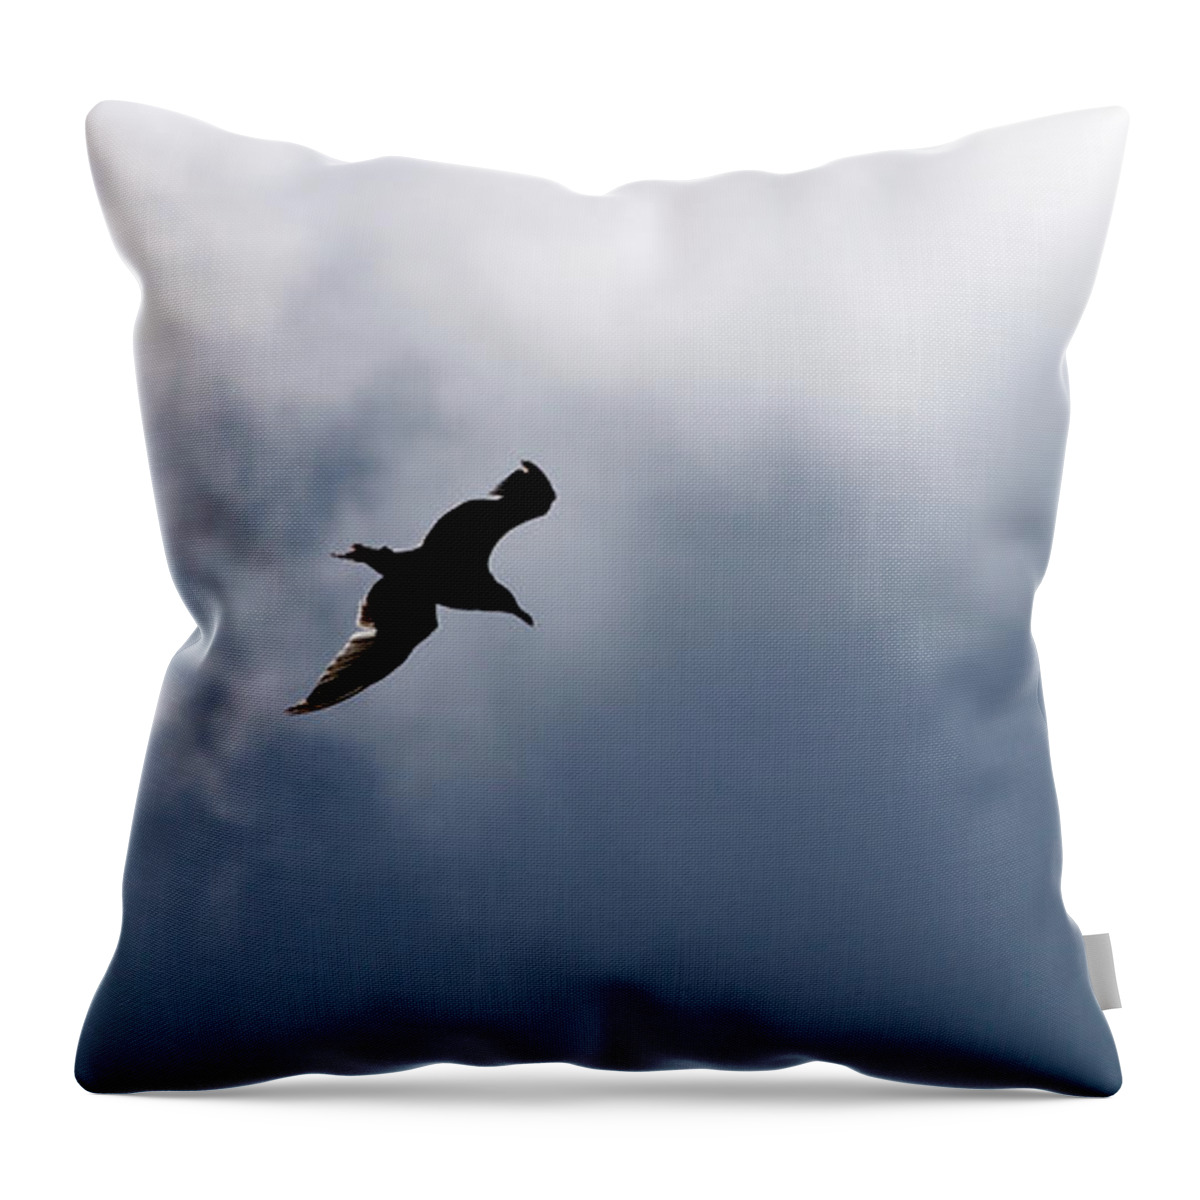 Lehtokukka Throw Pillow featuring the photograph Seagull's sky 1 by Jouko Lehto